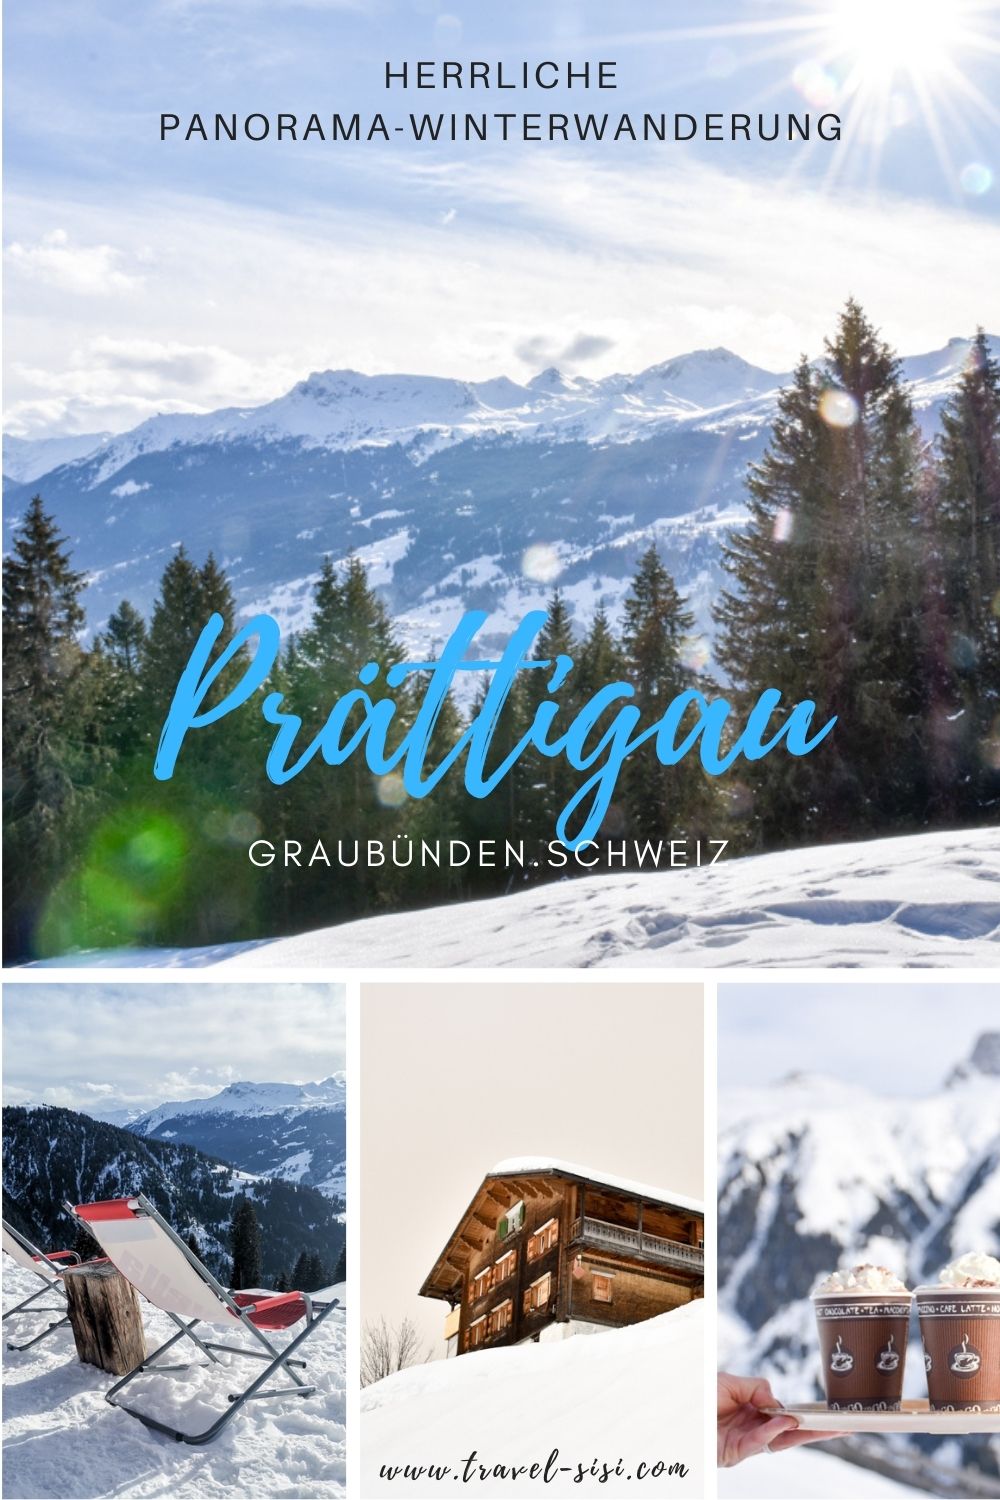 Panorama-Winterwanderung Prättigau Graubünden Schweiz